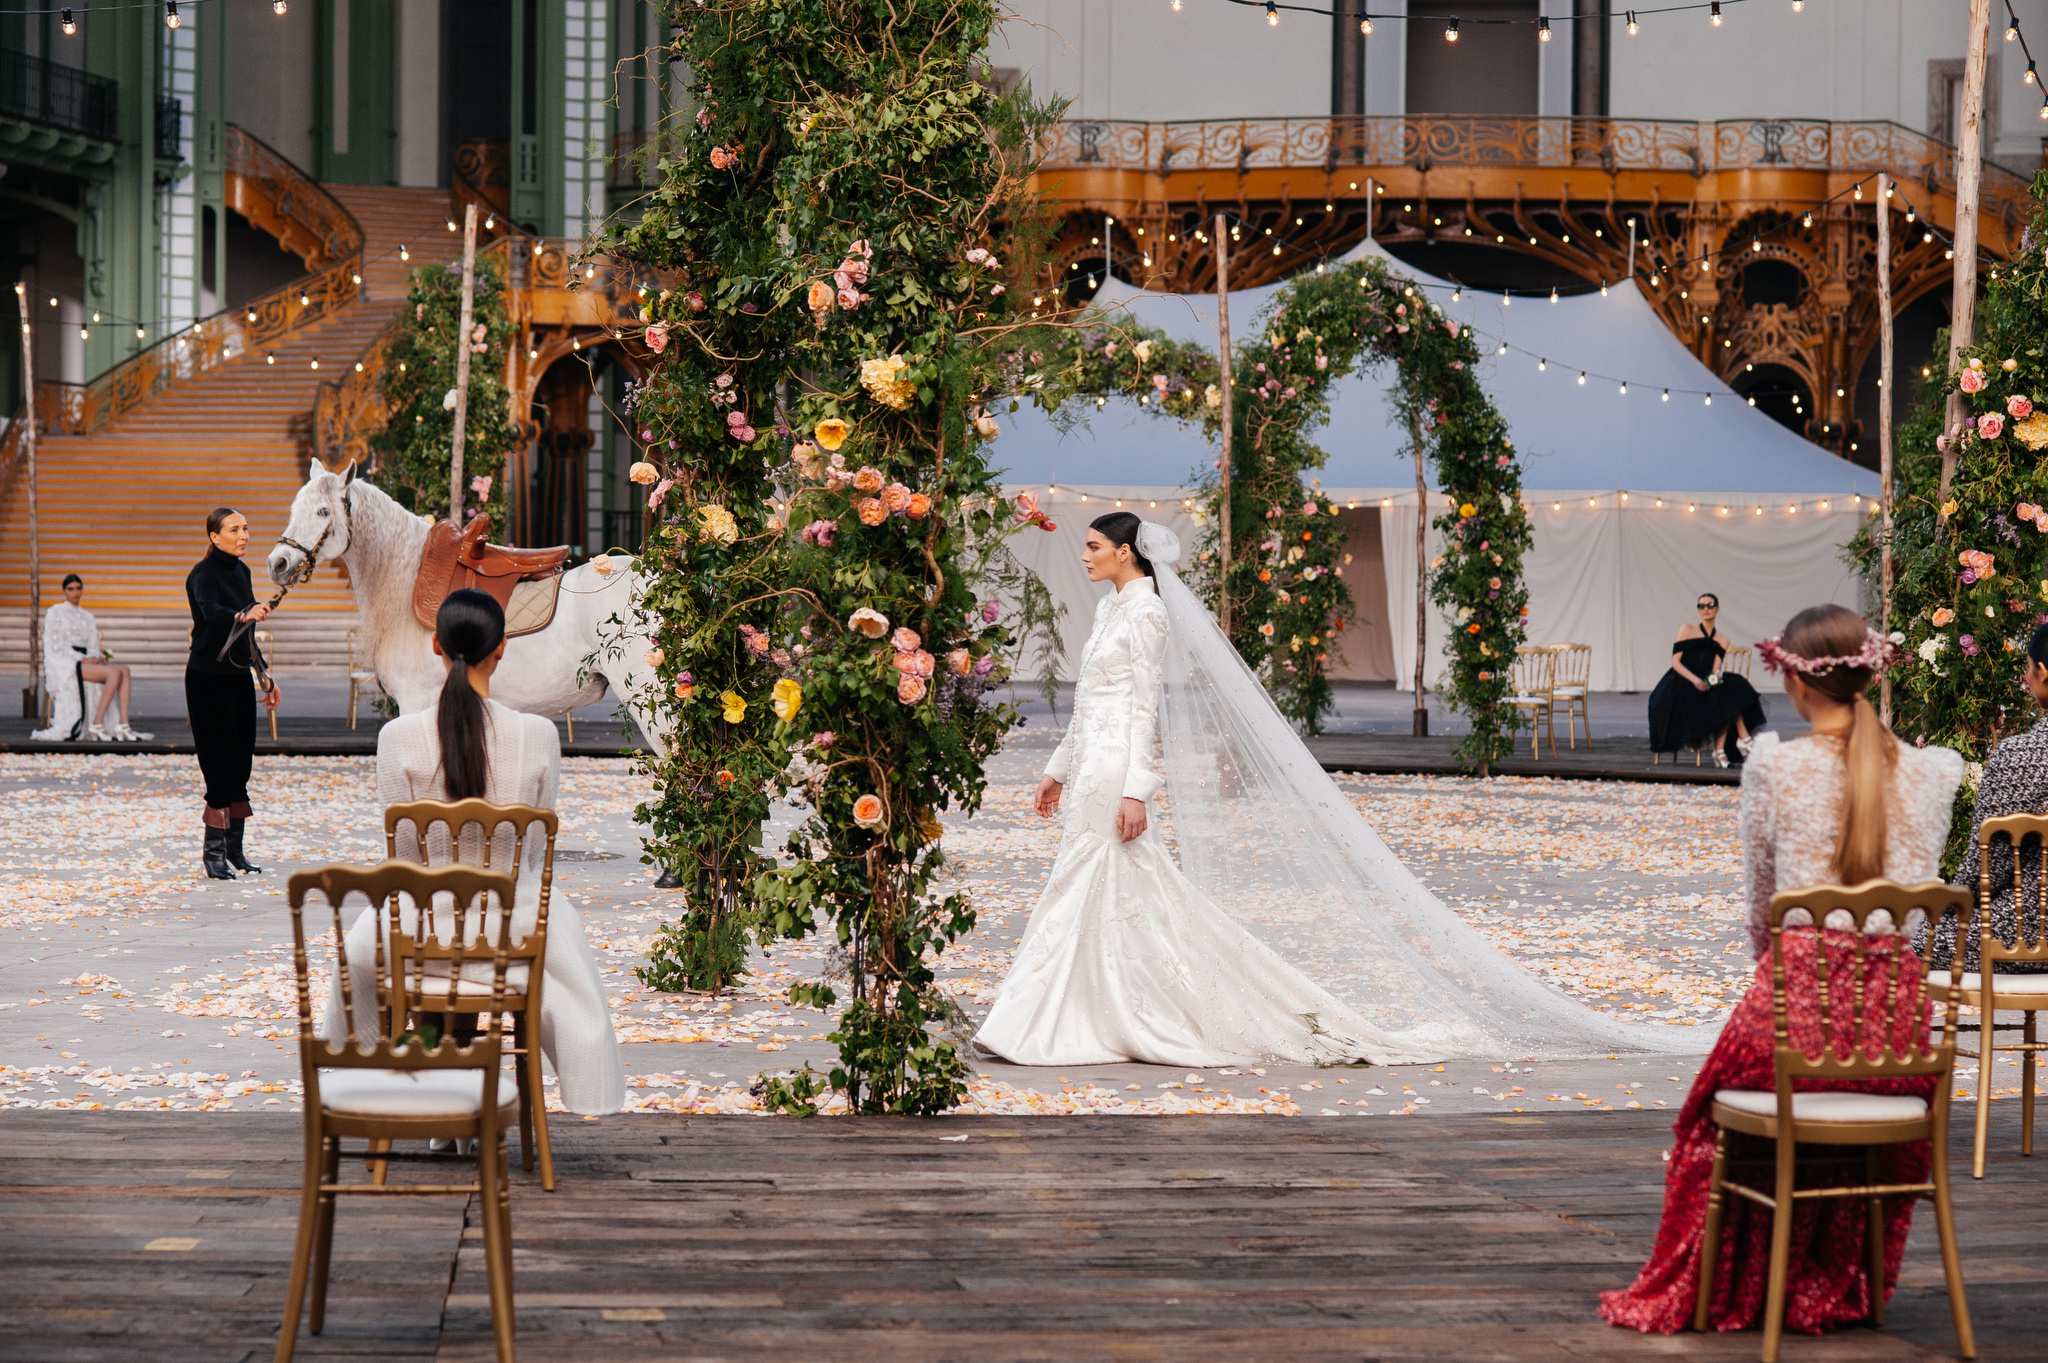 Say đắm với bộ sưu tập váy cưới đẹp nhất thế giới